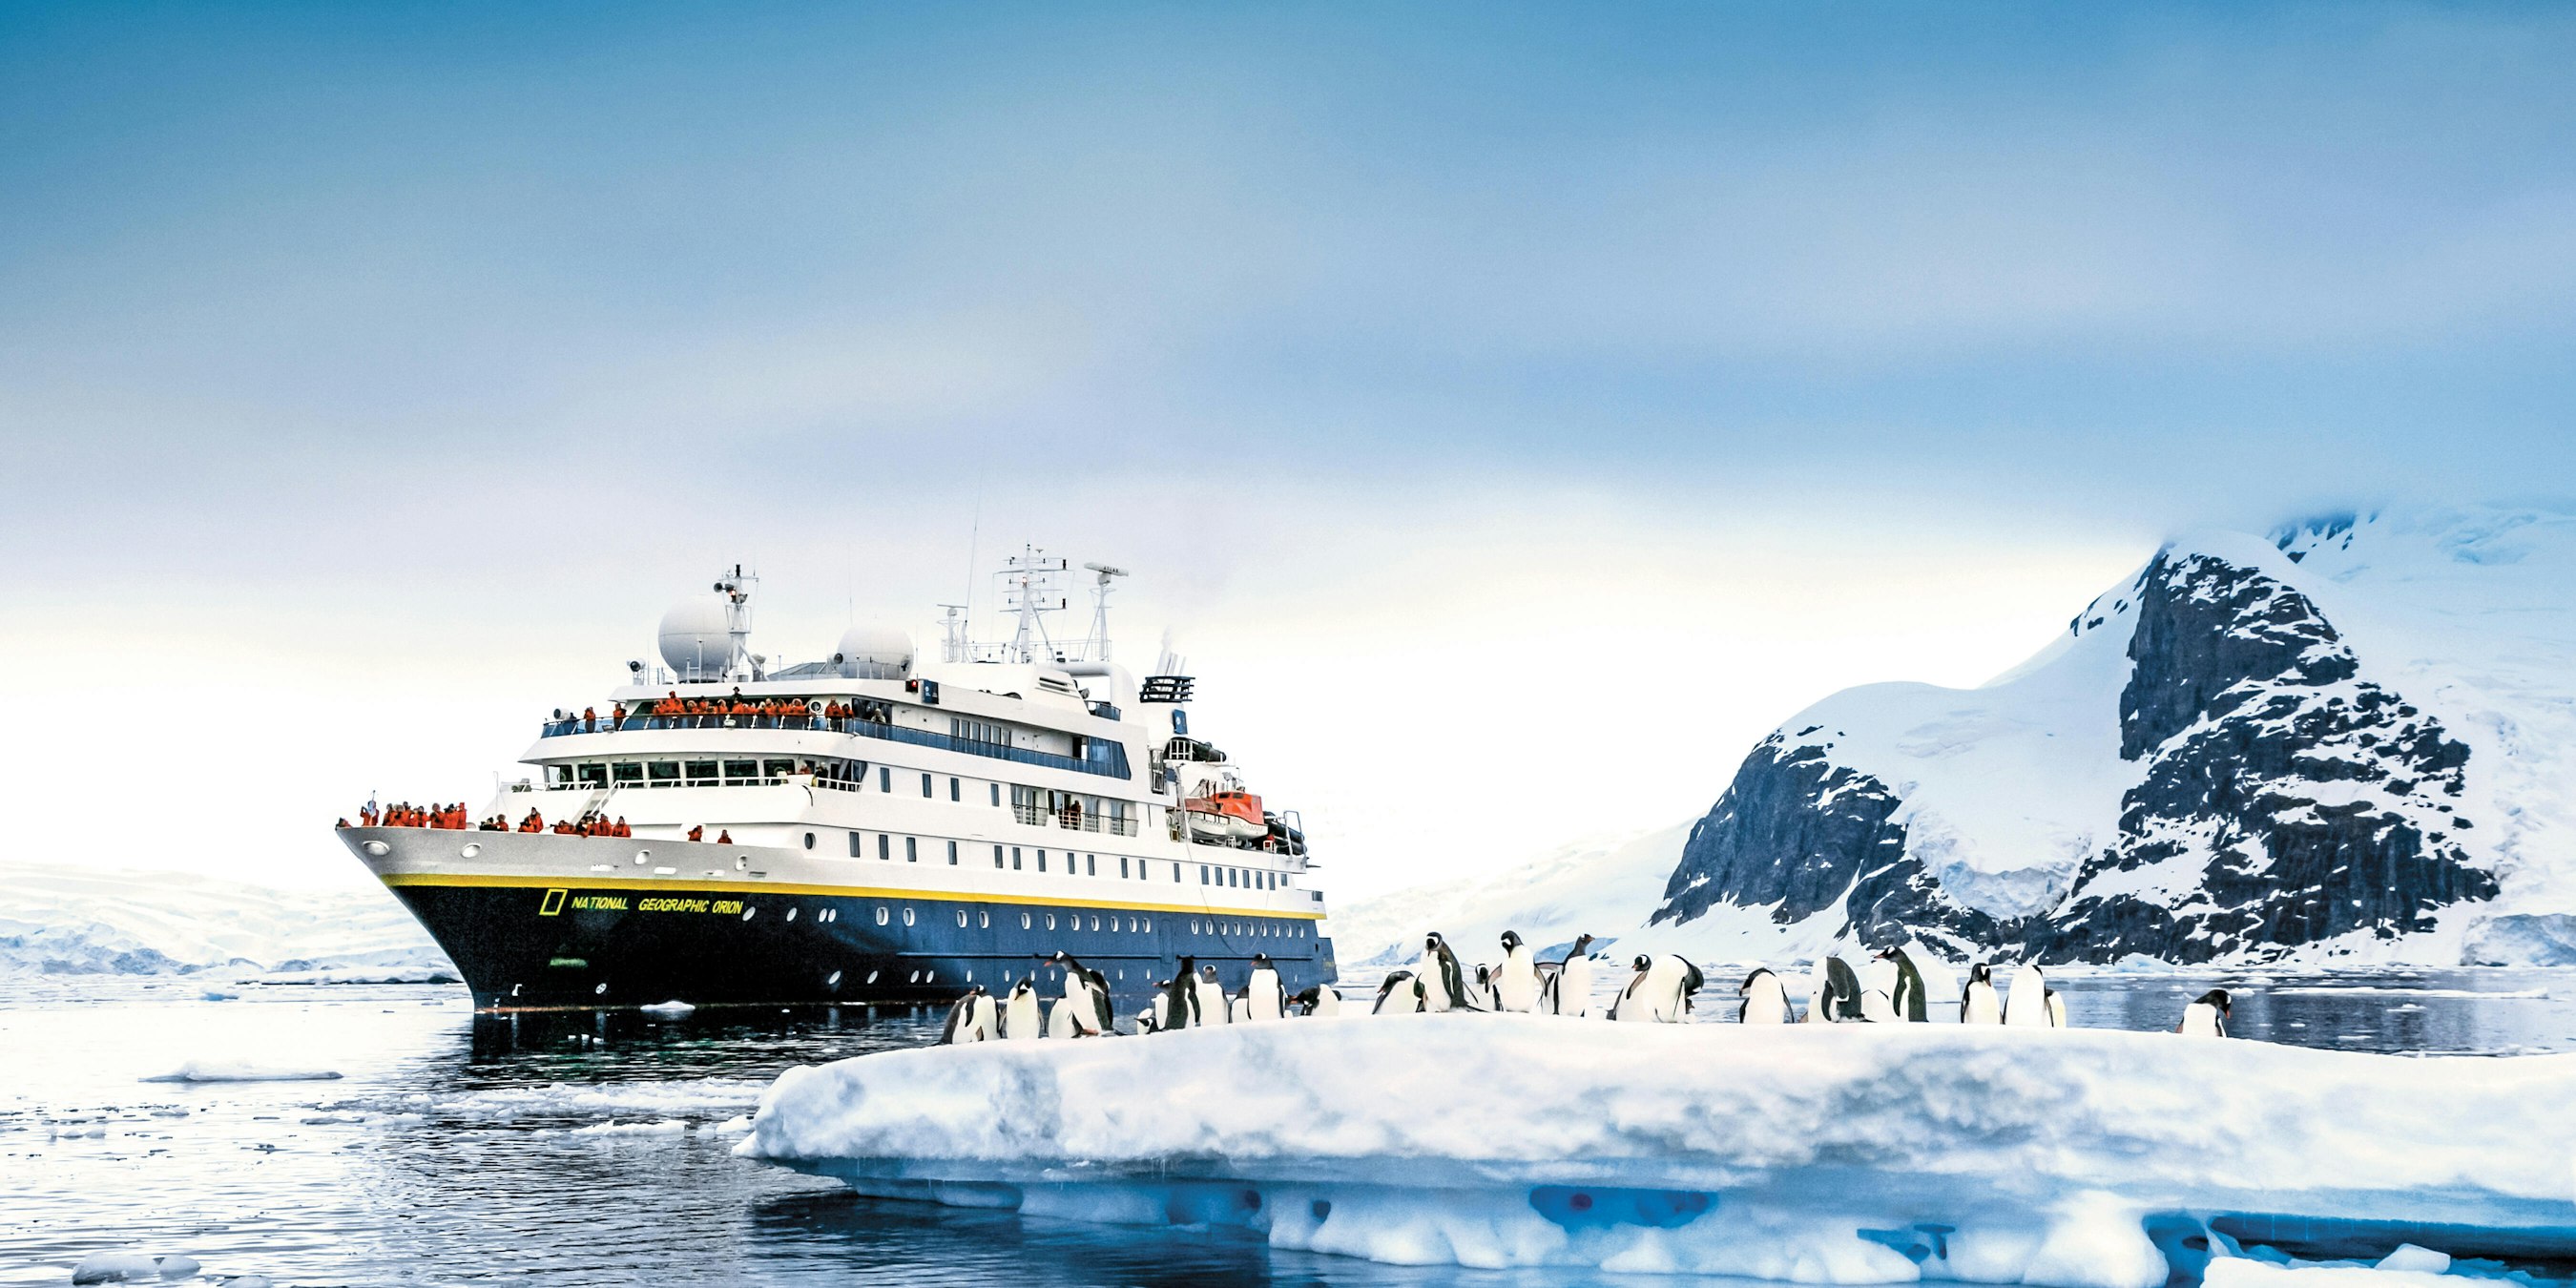 antarctica trips cost